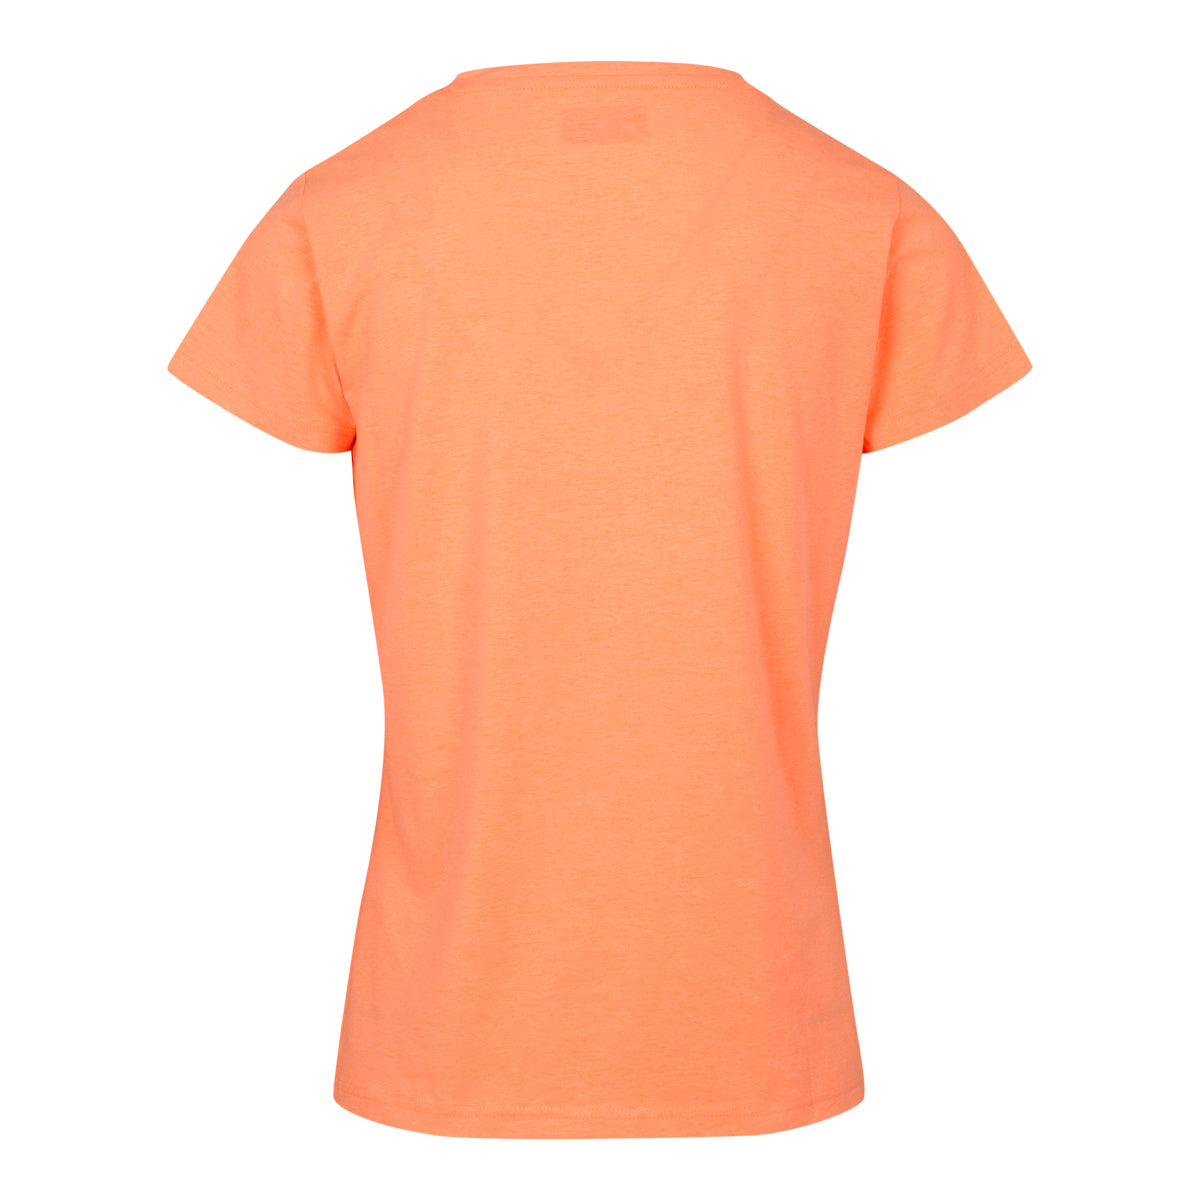 T-shirt Lifestyle Meleti Orange Femme - Image 2